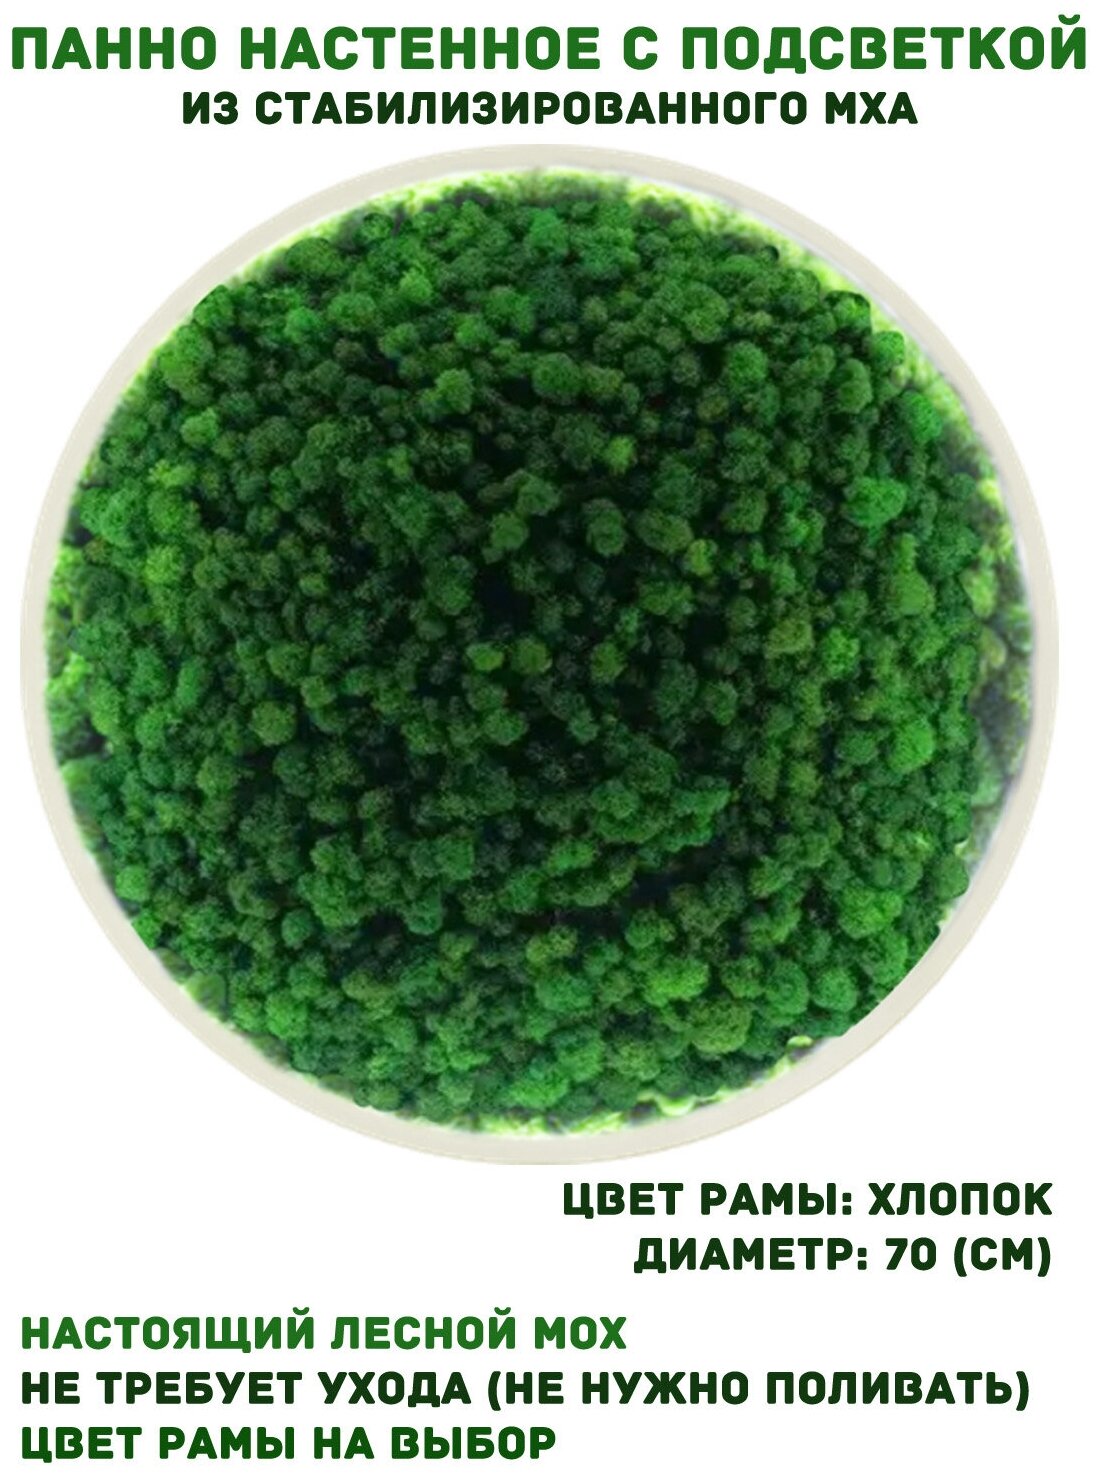 Круглое панно из стабилизированно мха GardenGo с подсветкой в рамке цвета хлопок, диаметр 70 см, цвет мха зеленый